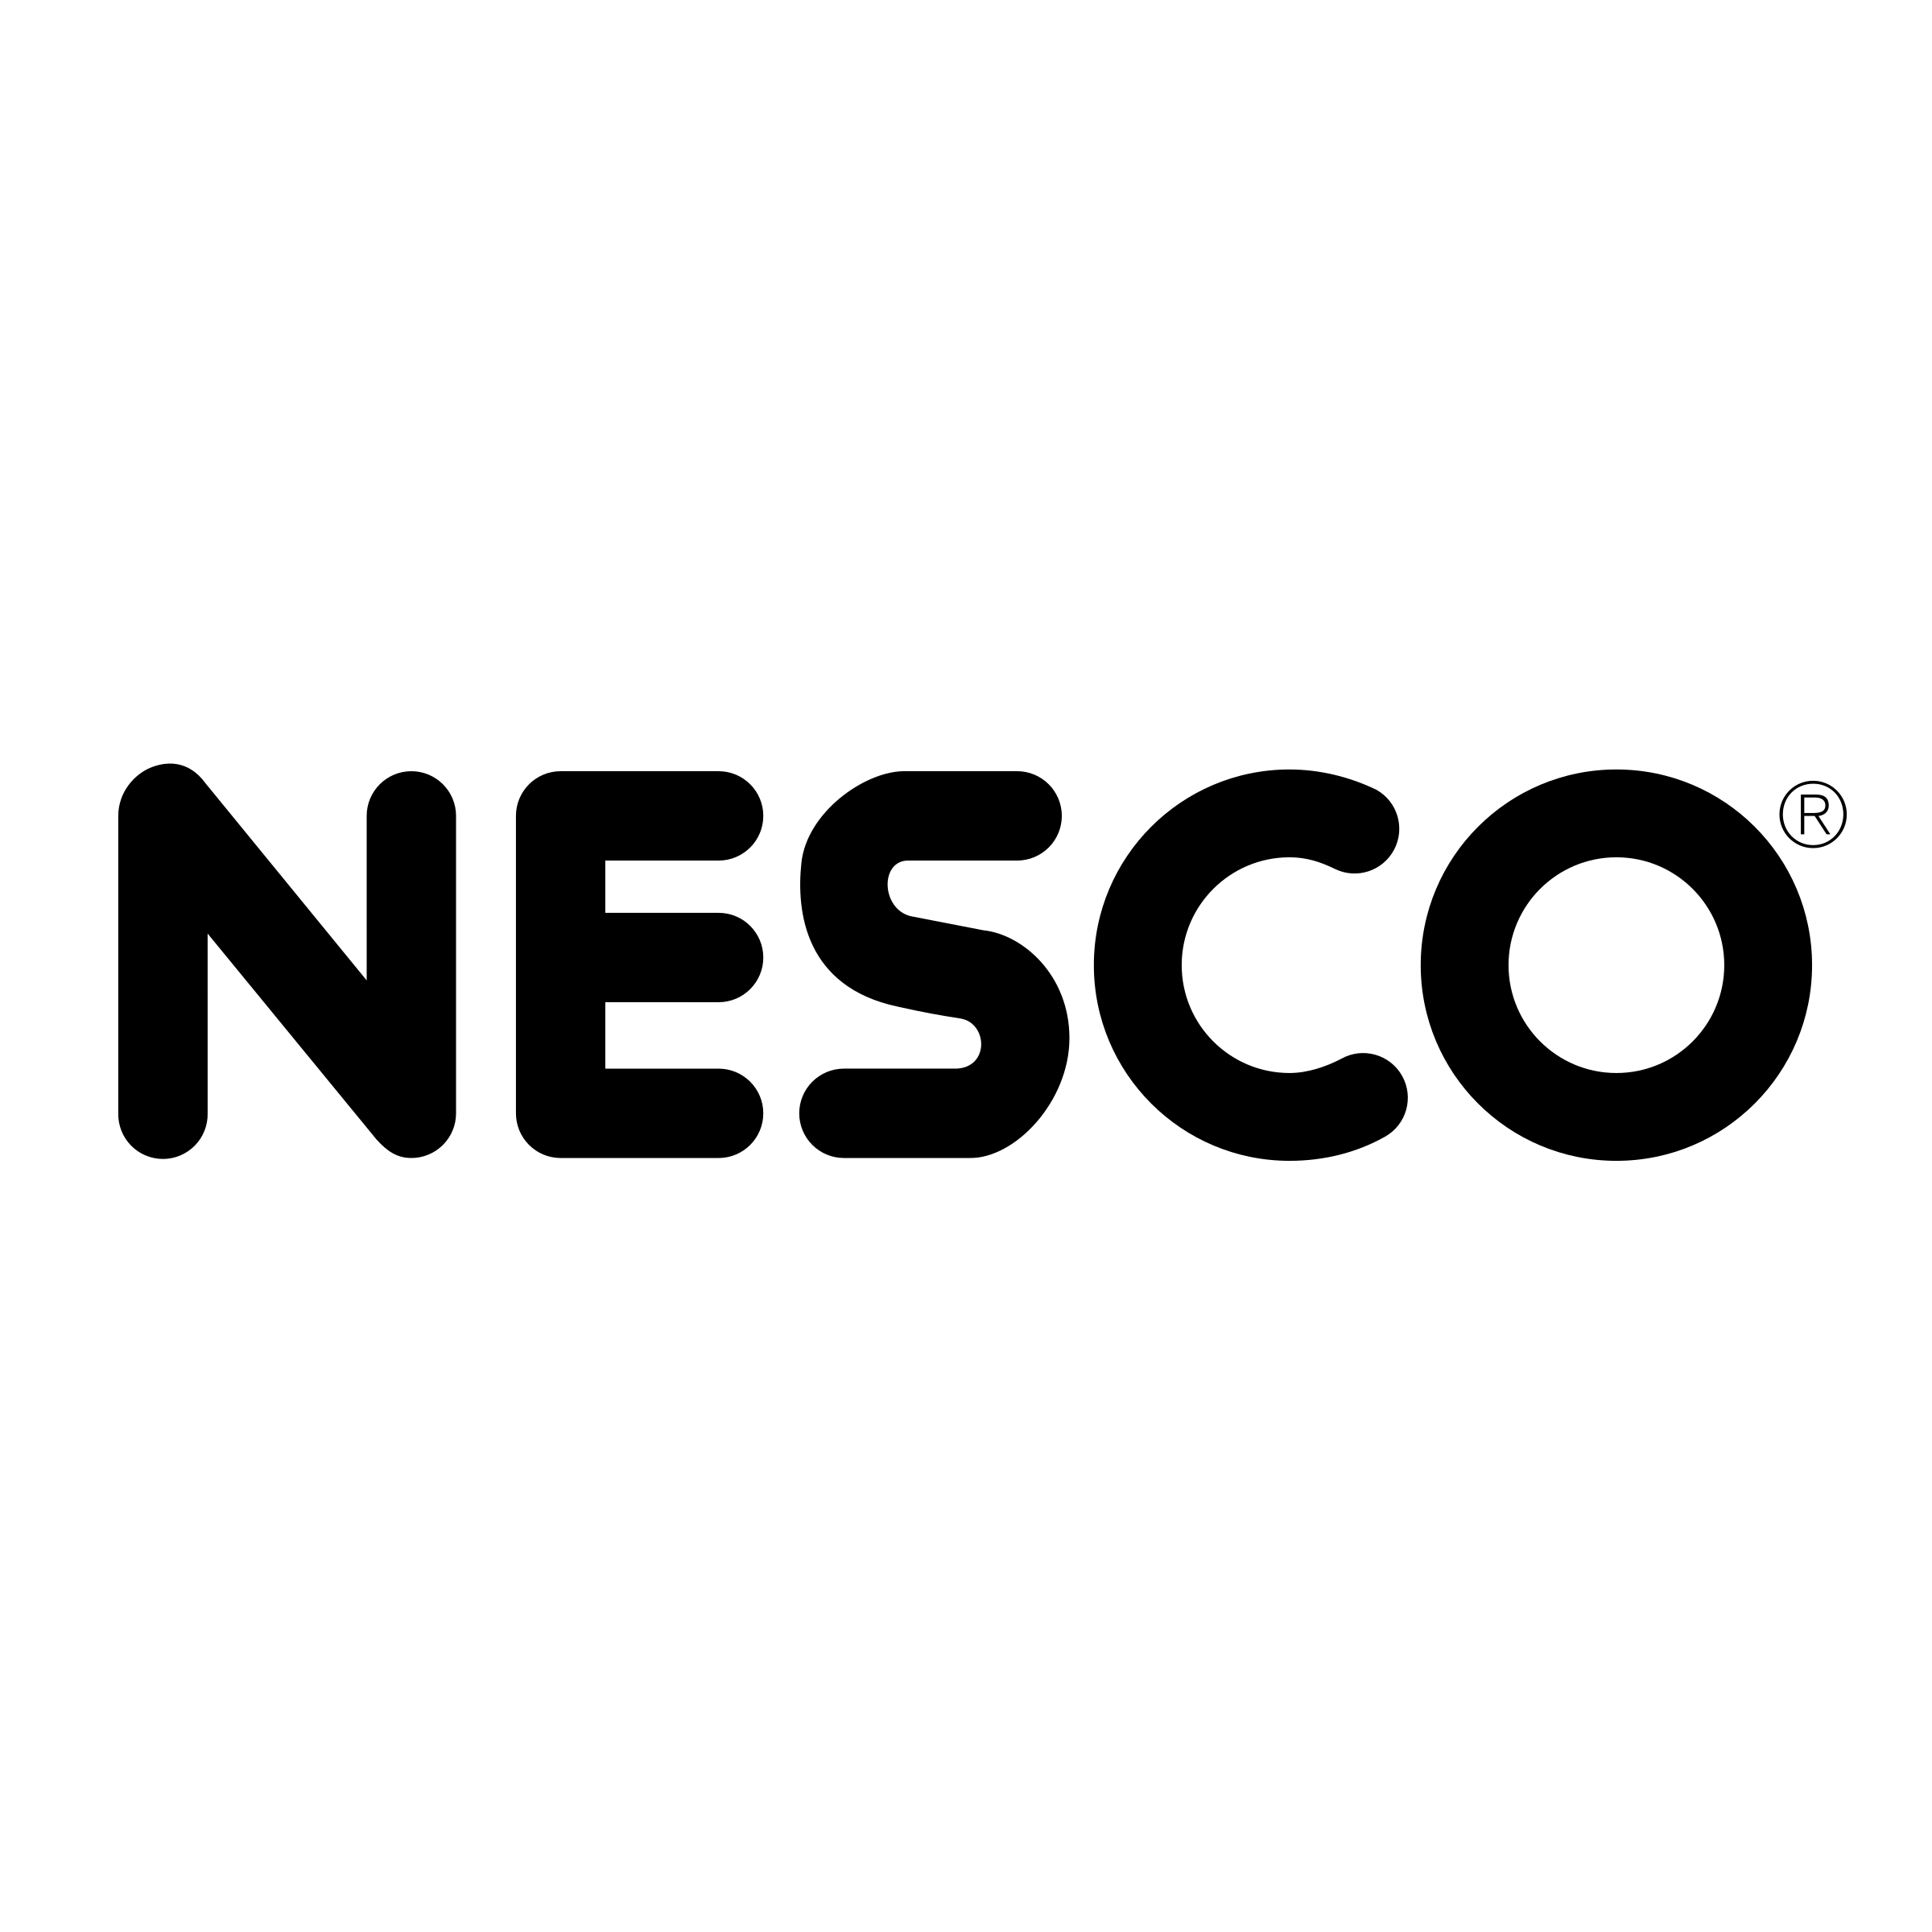 Nesco Logo - Nesco Logo PNG Transparent & SVG Vector - Freebie Supply